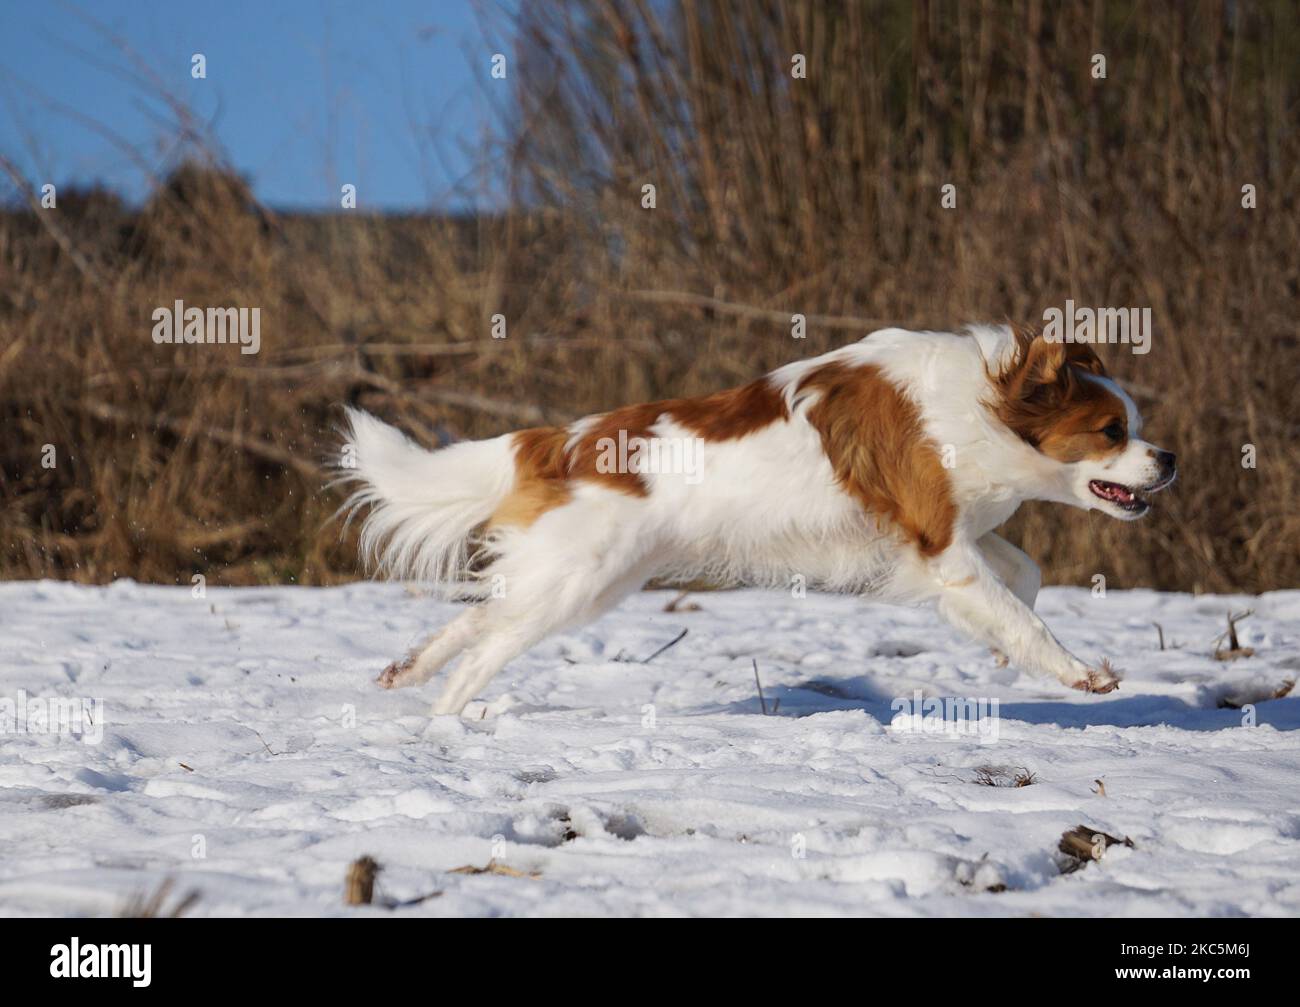 Ein süßer papillon Hund, der auf dem schneebedeckten Feld läuft und spielt Stockfoto